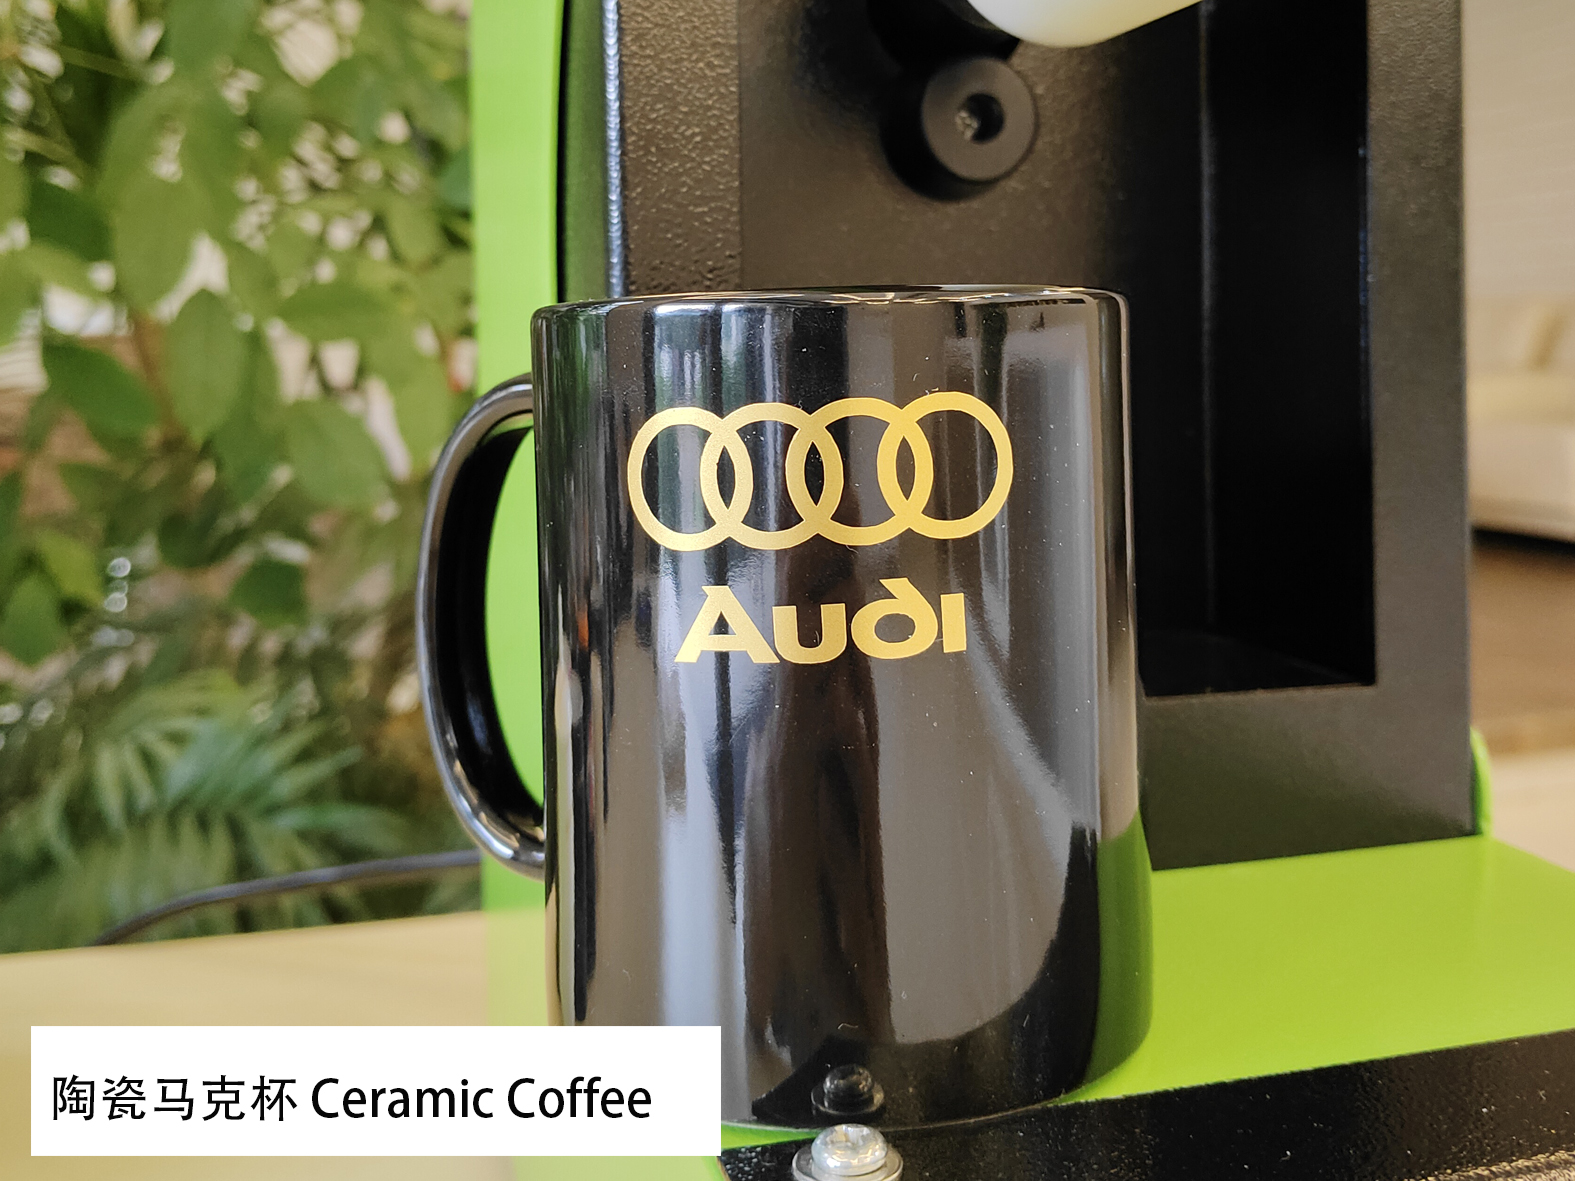 Brilliant Golden Heat Transfer Decals filmu (HSF-GD811) Fyrir keramik kaffi frá Audi merki